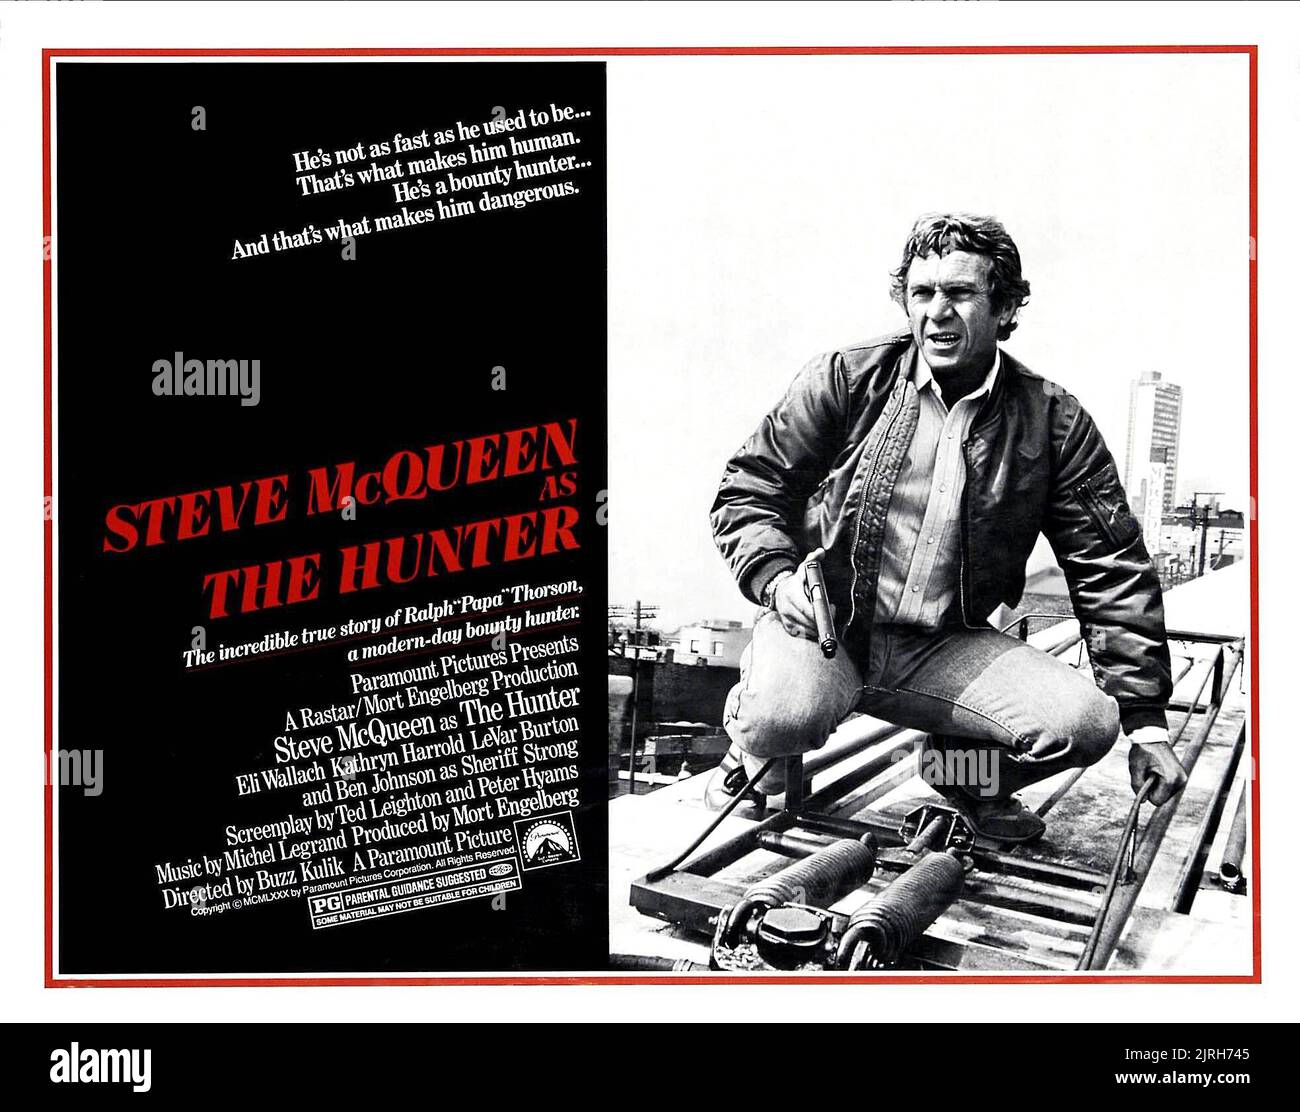 STEVE MCQUEEN, THE HUNTER, 1980 Stock Photo